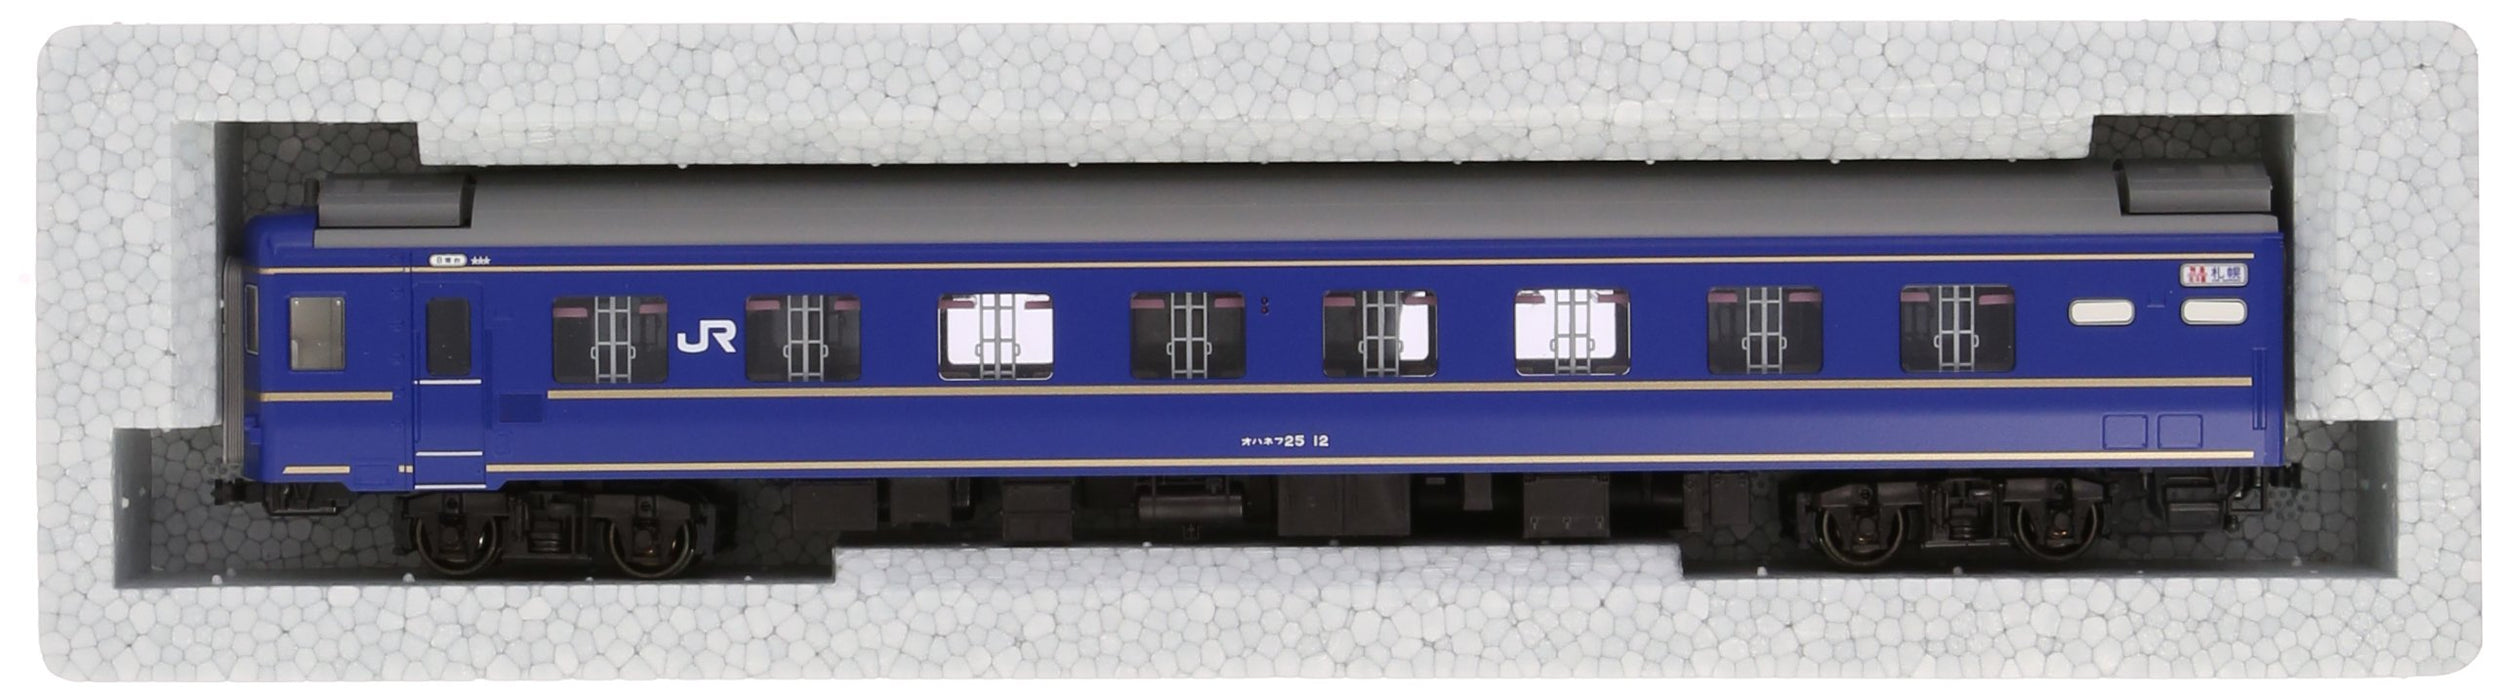 Kato Ho Gauge 1-567 Railway Model - Hokutosei Passenger Car - Ohanefu 25 Edition